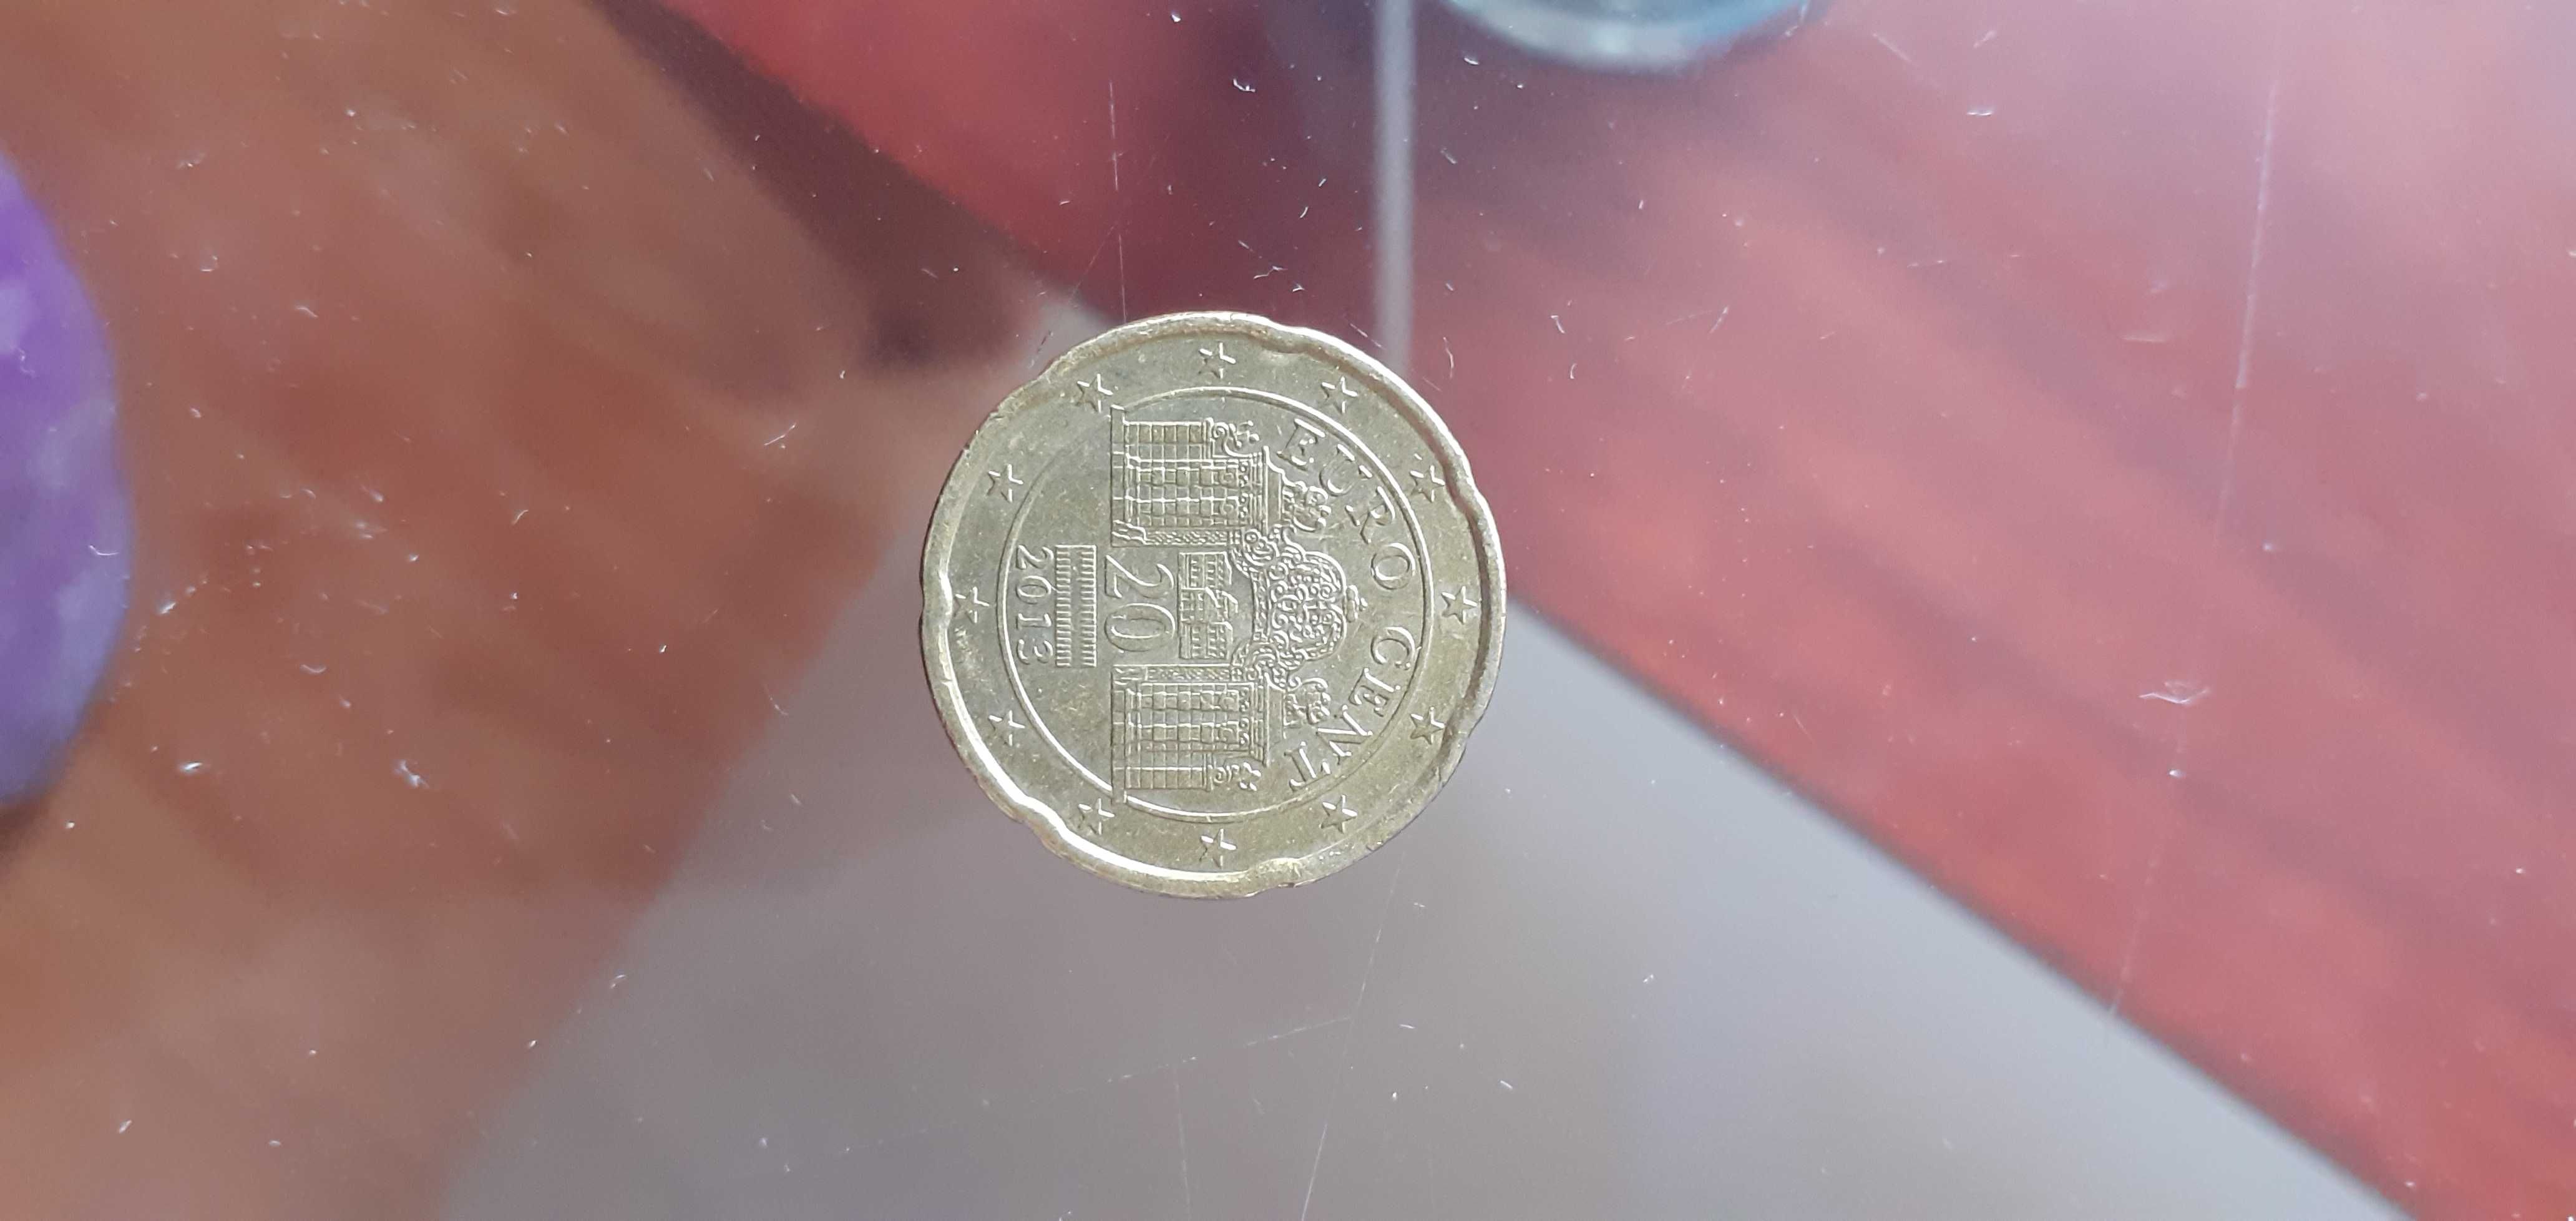 Vand moneda 1 euro Spania, an 2001